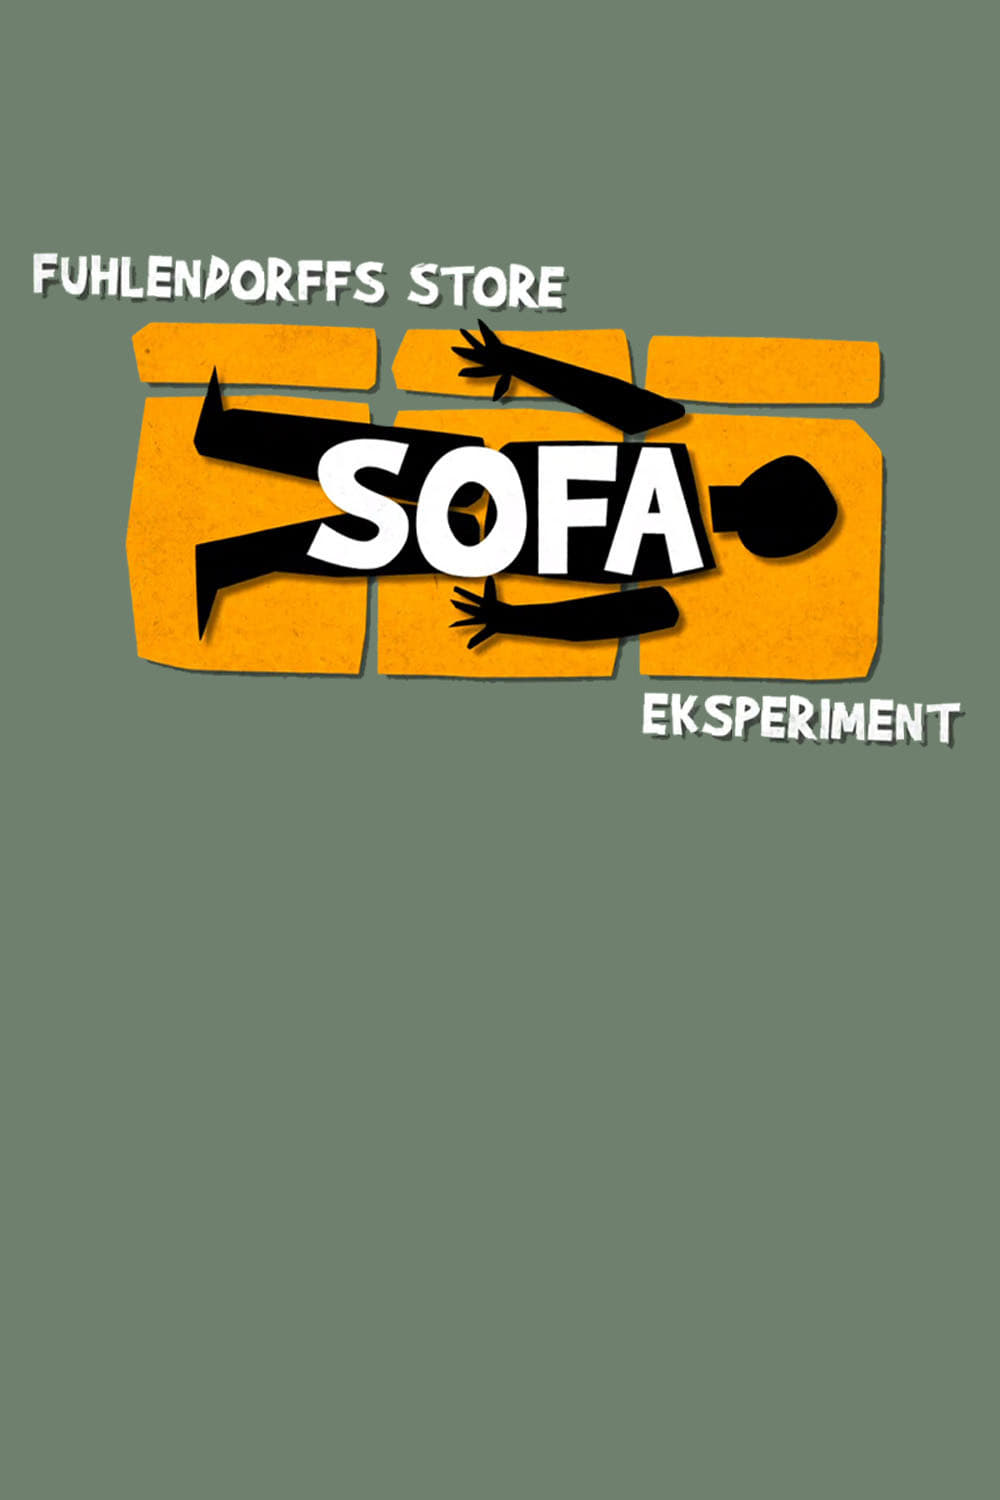 Fuhlendorffs store sofaeksperiment